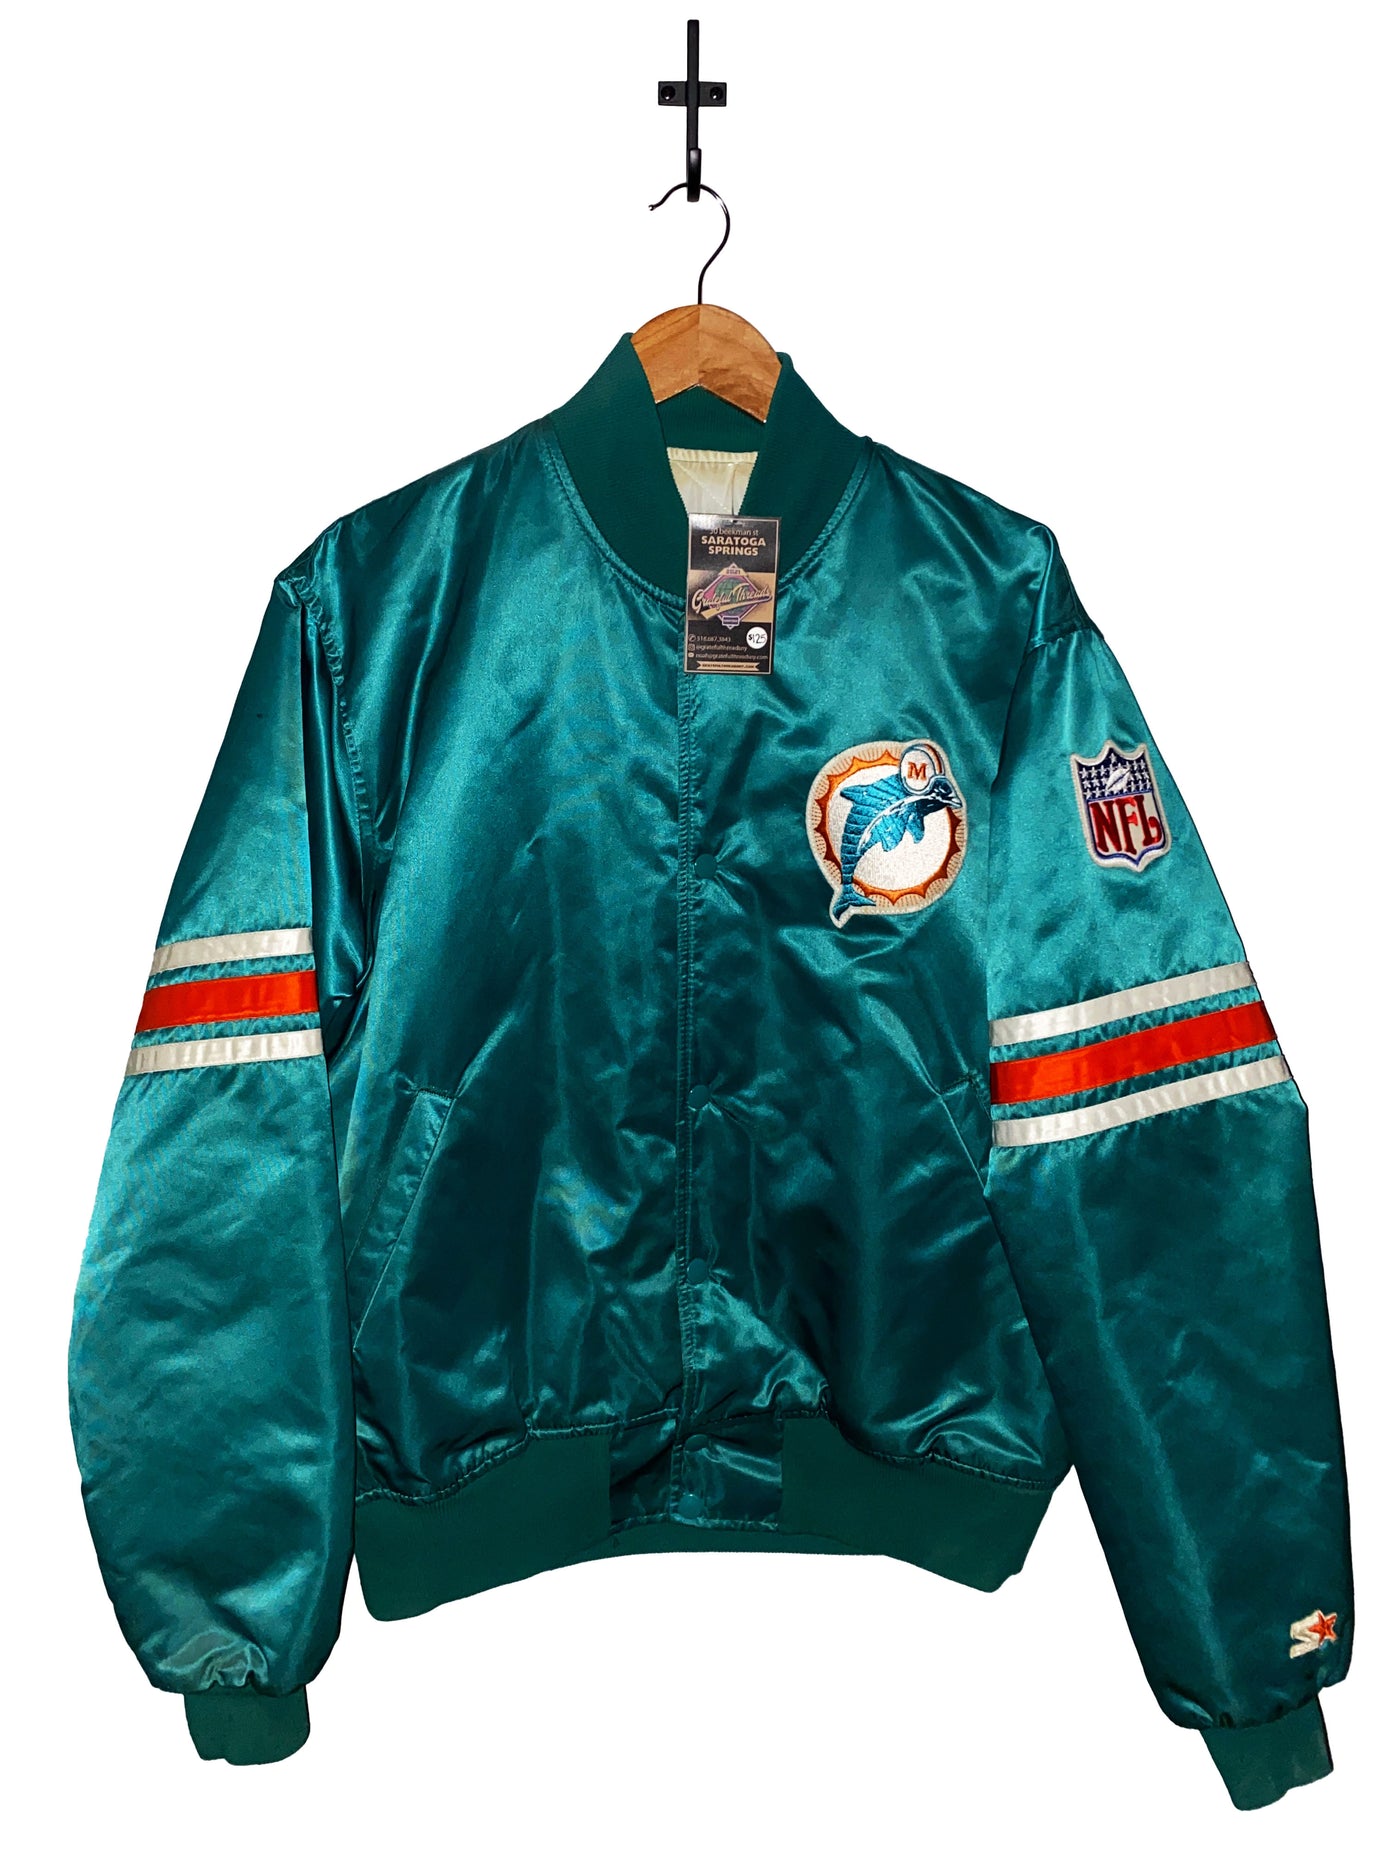 Vintage Dolphins Starter Bomber Jacket